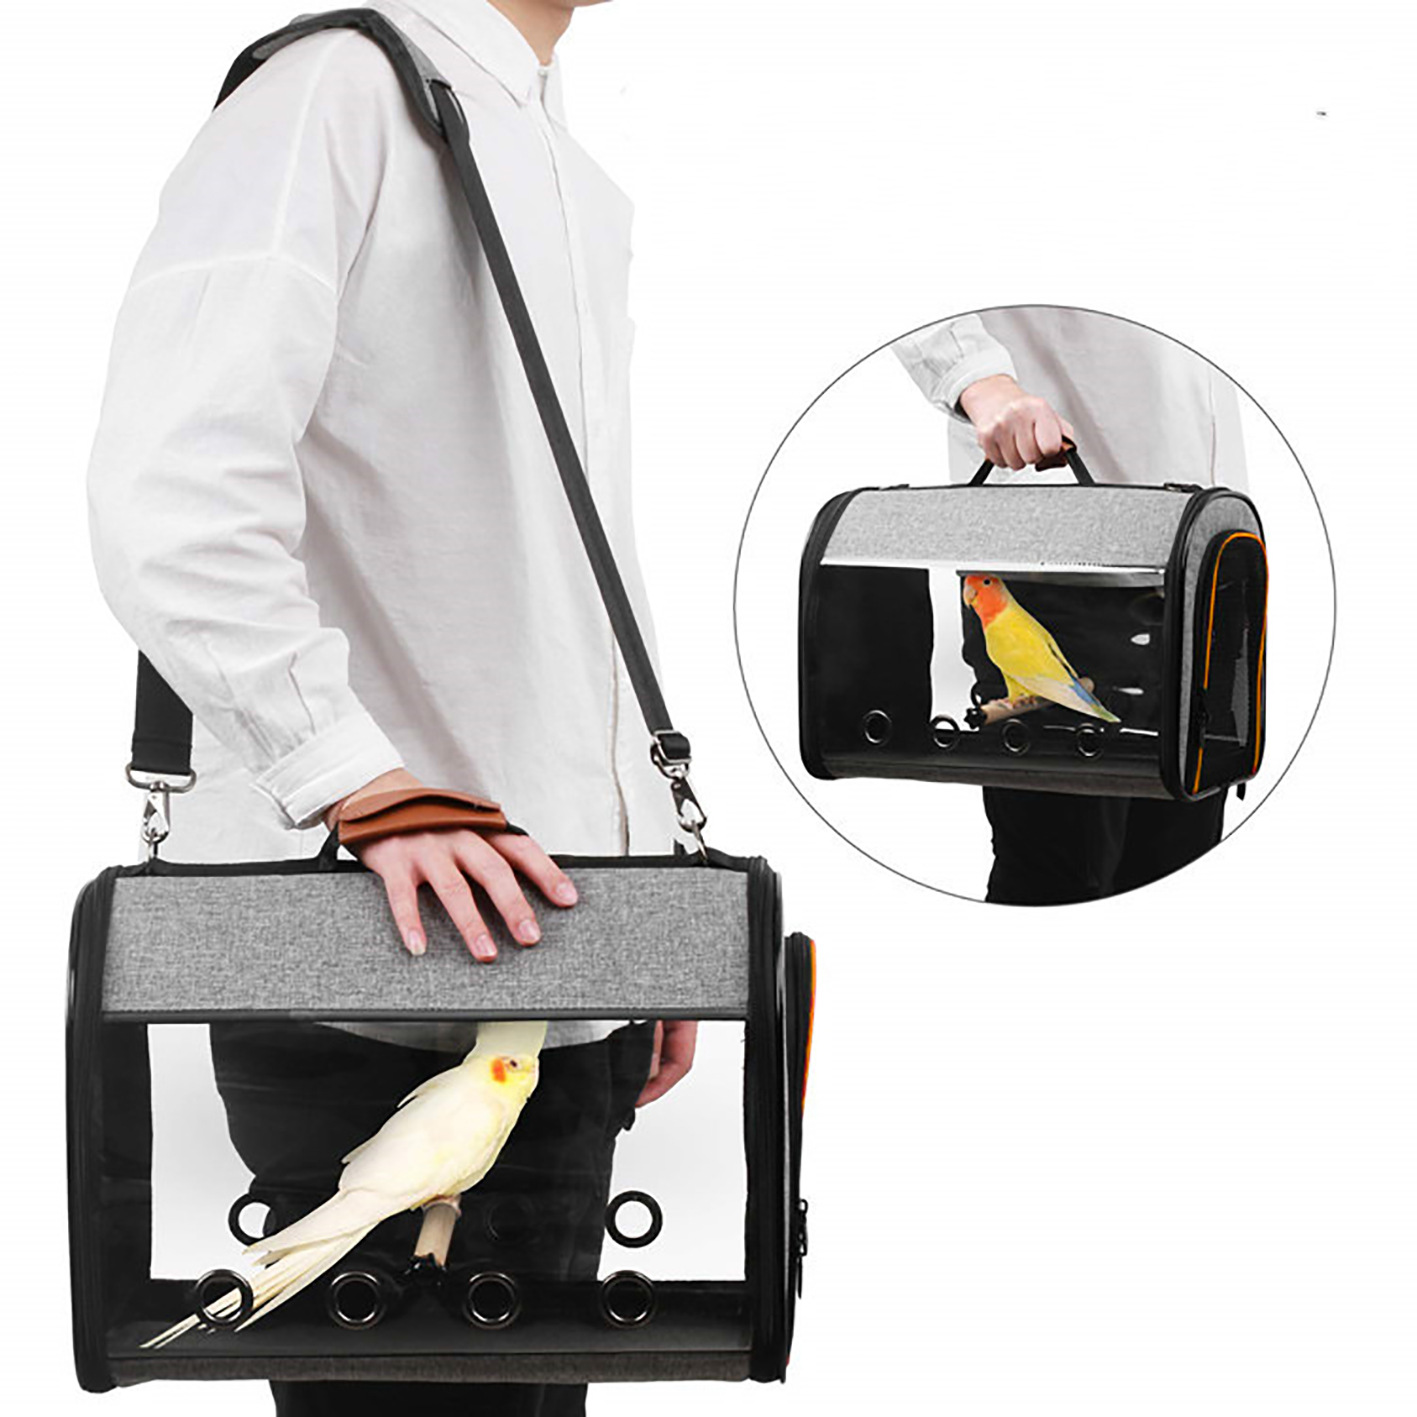 Çanta transportuese e shtëpisë, e lehtë, e palosshme dhe e palosshme me një shpatull për kafshë shtëpiake